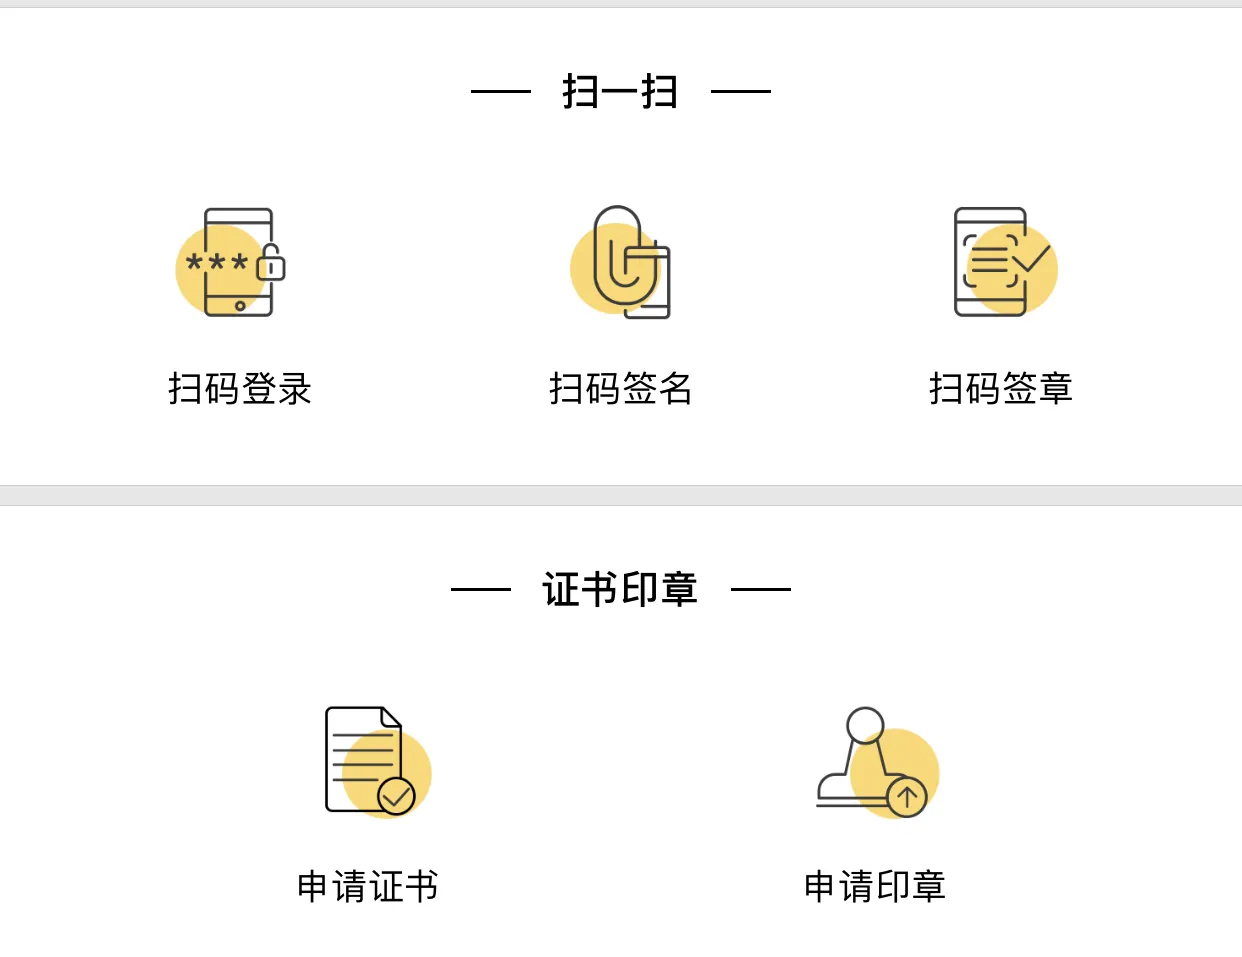 想创业的朋友们，我来分享一个在上海注册公司的两种方法